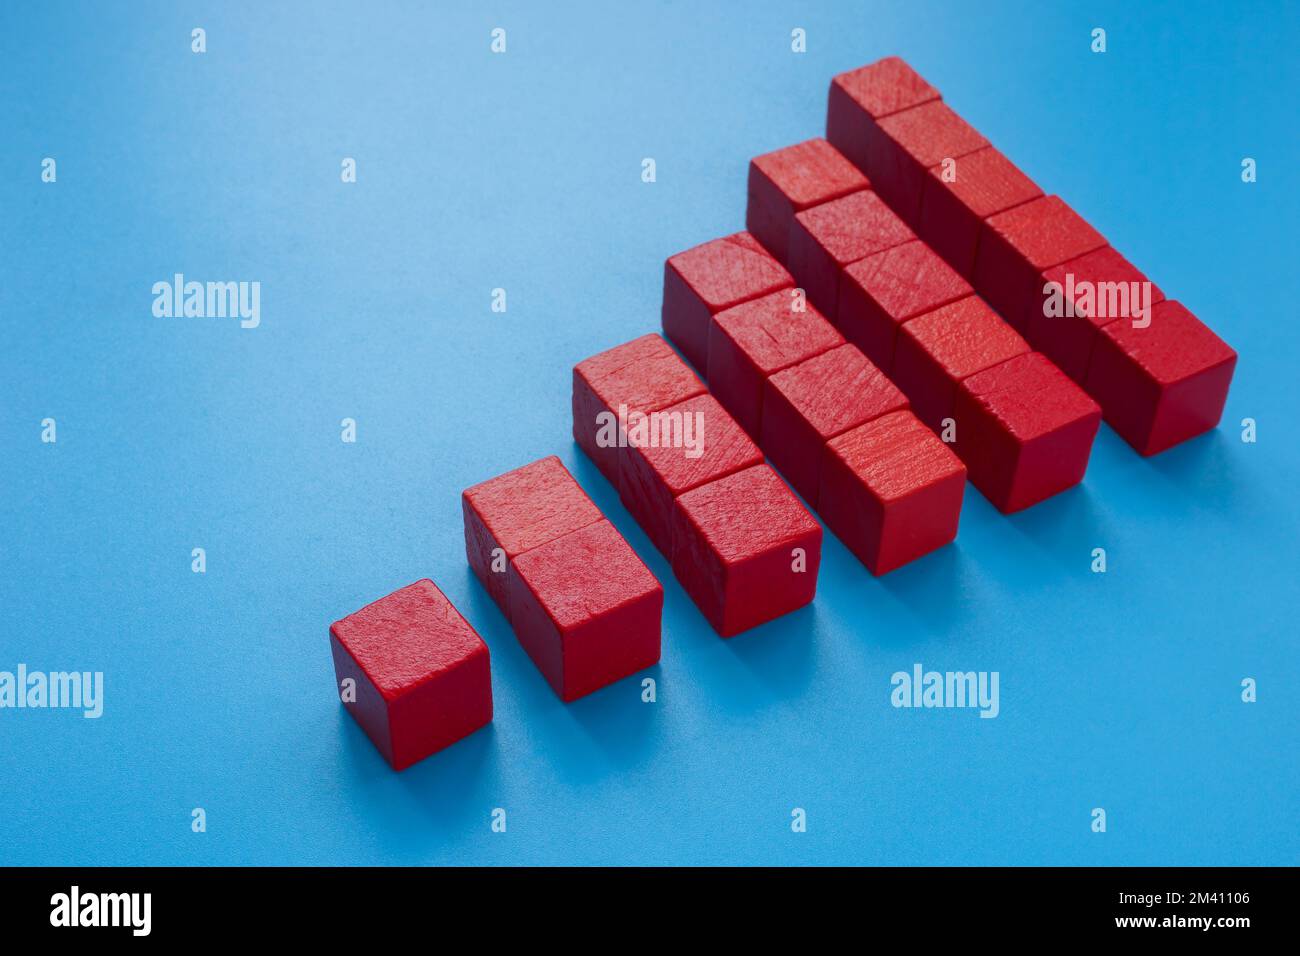 Une pyramide de cubes rouges. Concept d'évolutivité. Banque D'Images